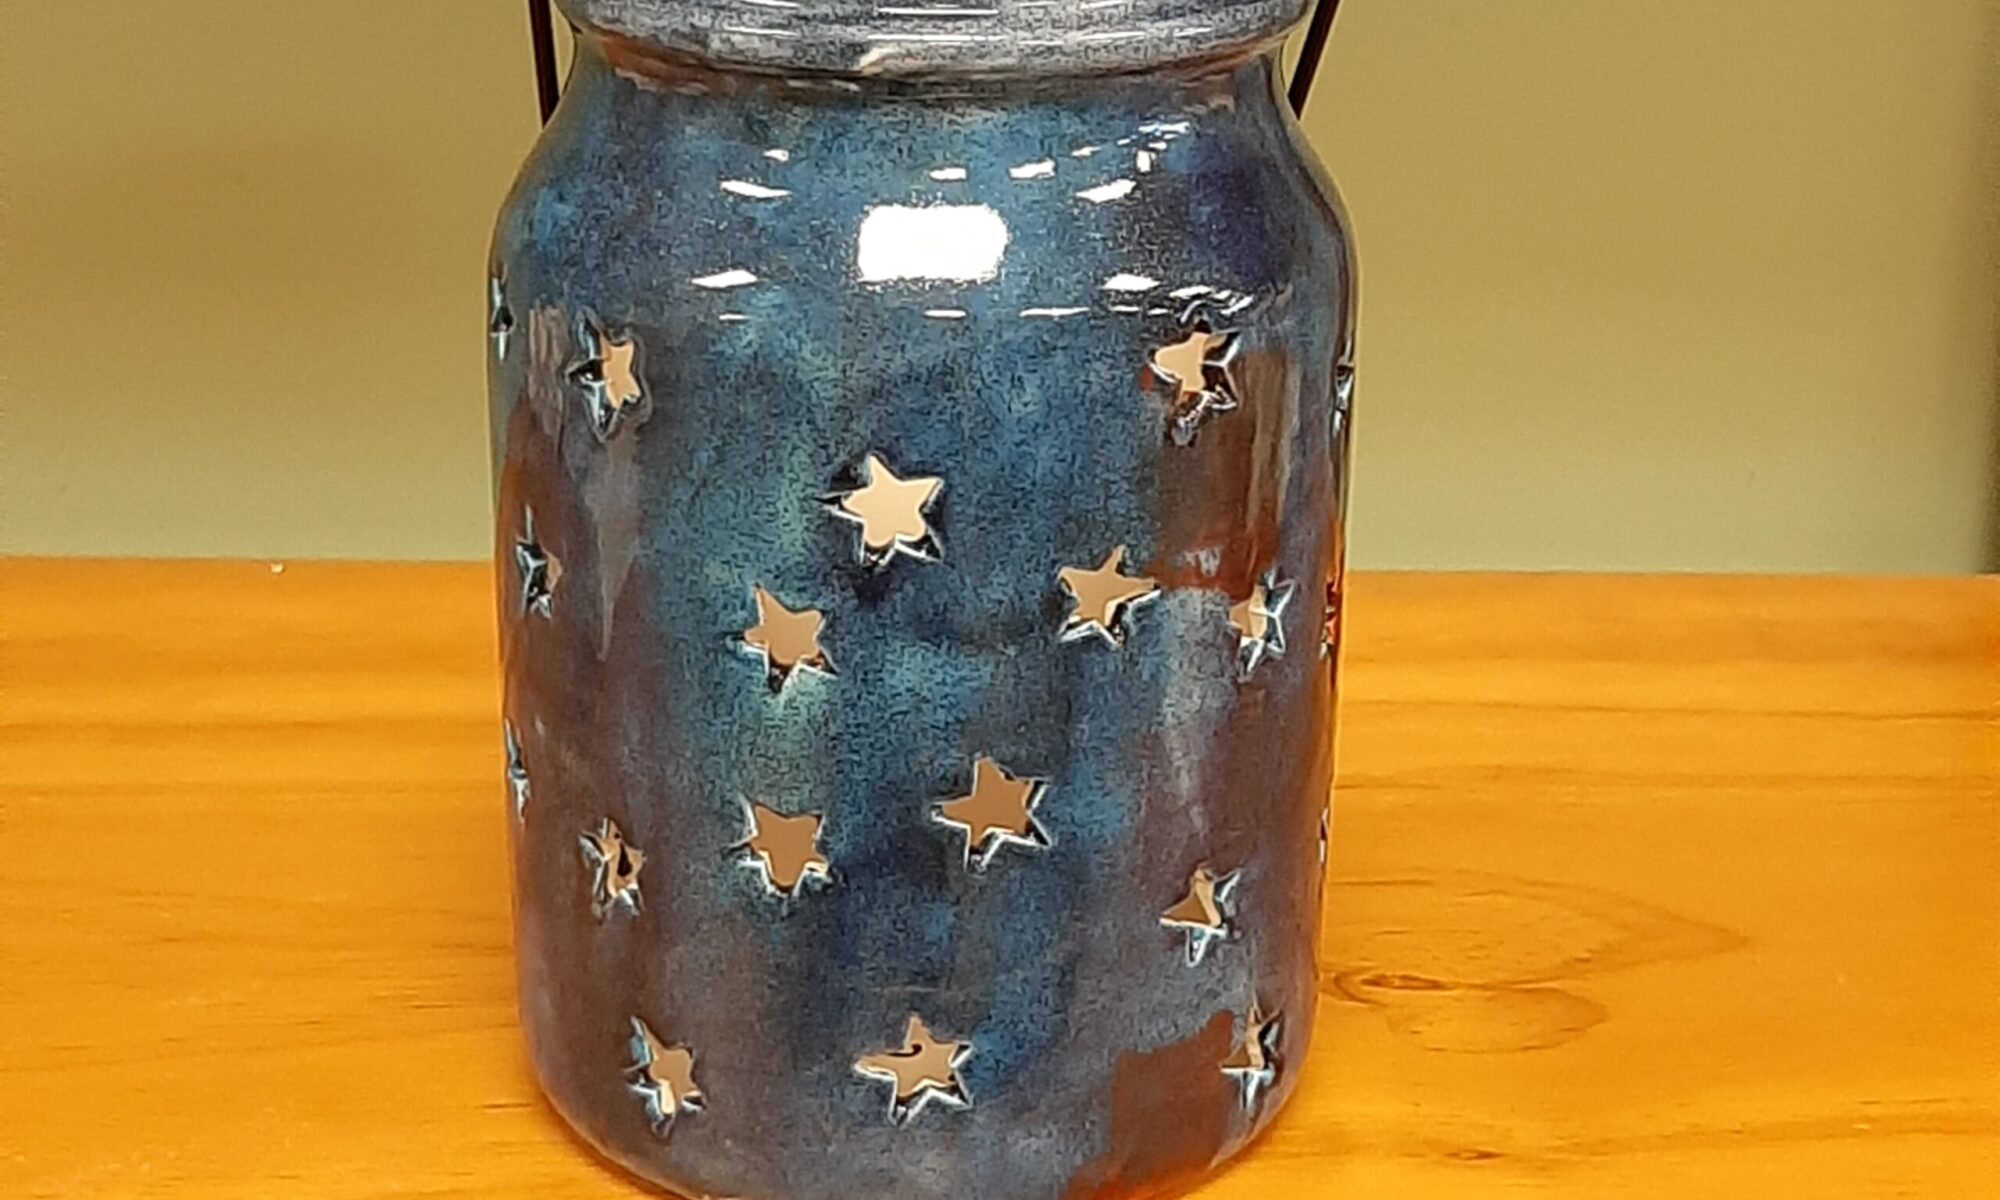 Mason Jar Lantern